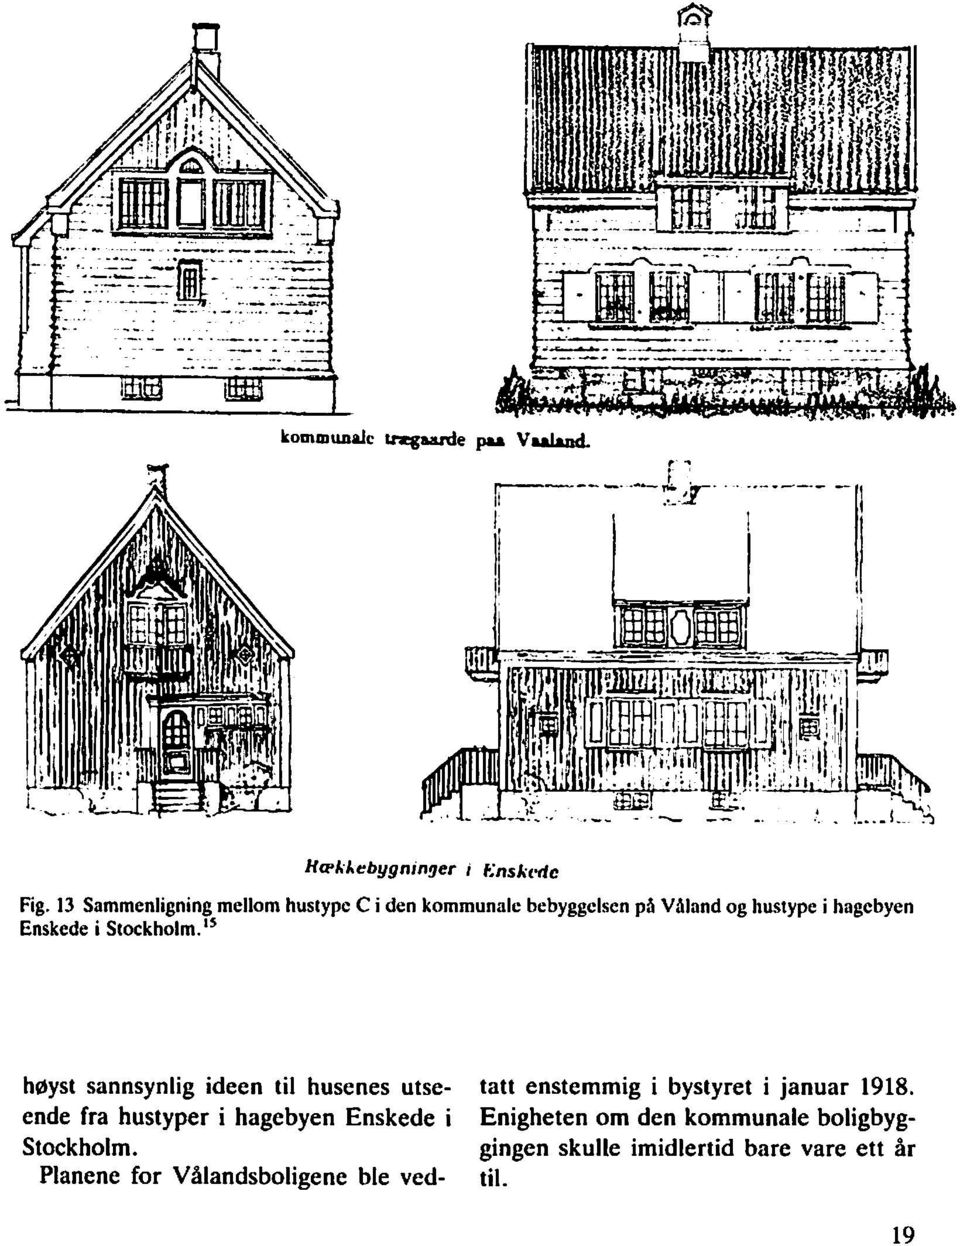 i St~ckholm.'~ h~yst sannsynlig ideen til husenes utse- tatt enstemmig i bystyret i januar 1918.